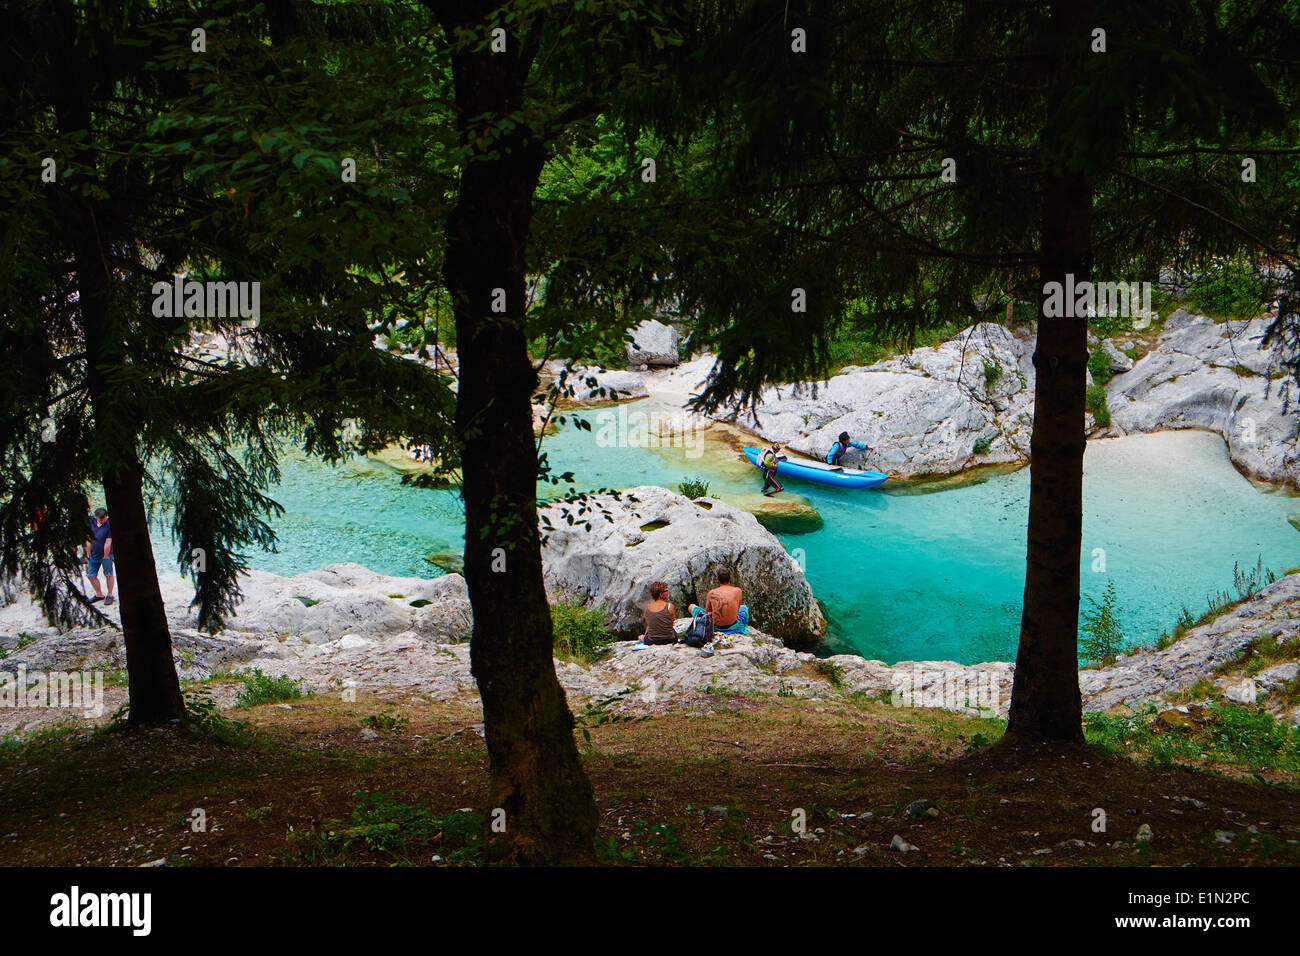 Slovenia, Goriska region, Bovec, Triglav National Park, Velika Korita, Soca river gorge Stock Photo